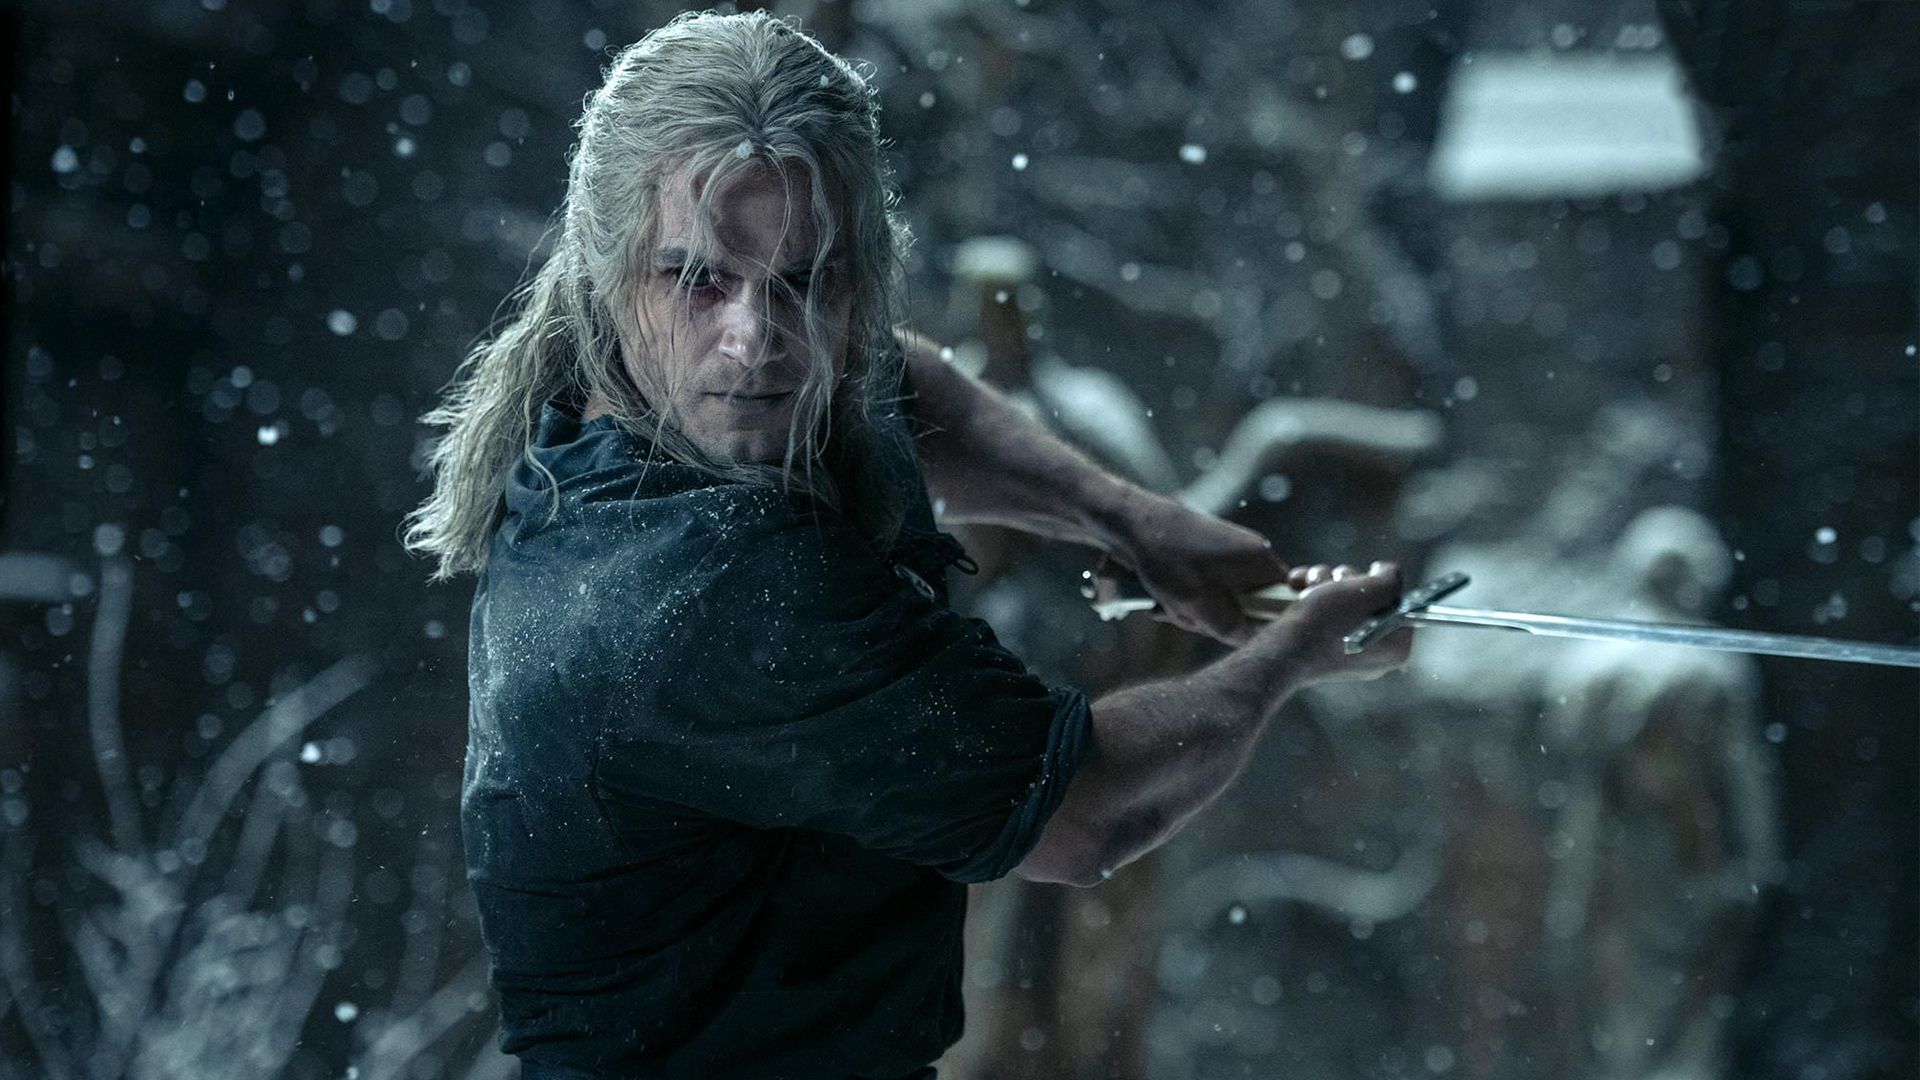 گرالت با بازی هنری کویل در فصل دوم سریال The Witcher زیر آب و هوای برفی تمرین می کند.